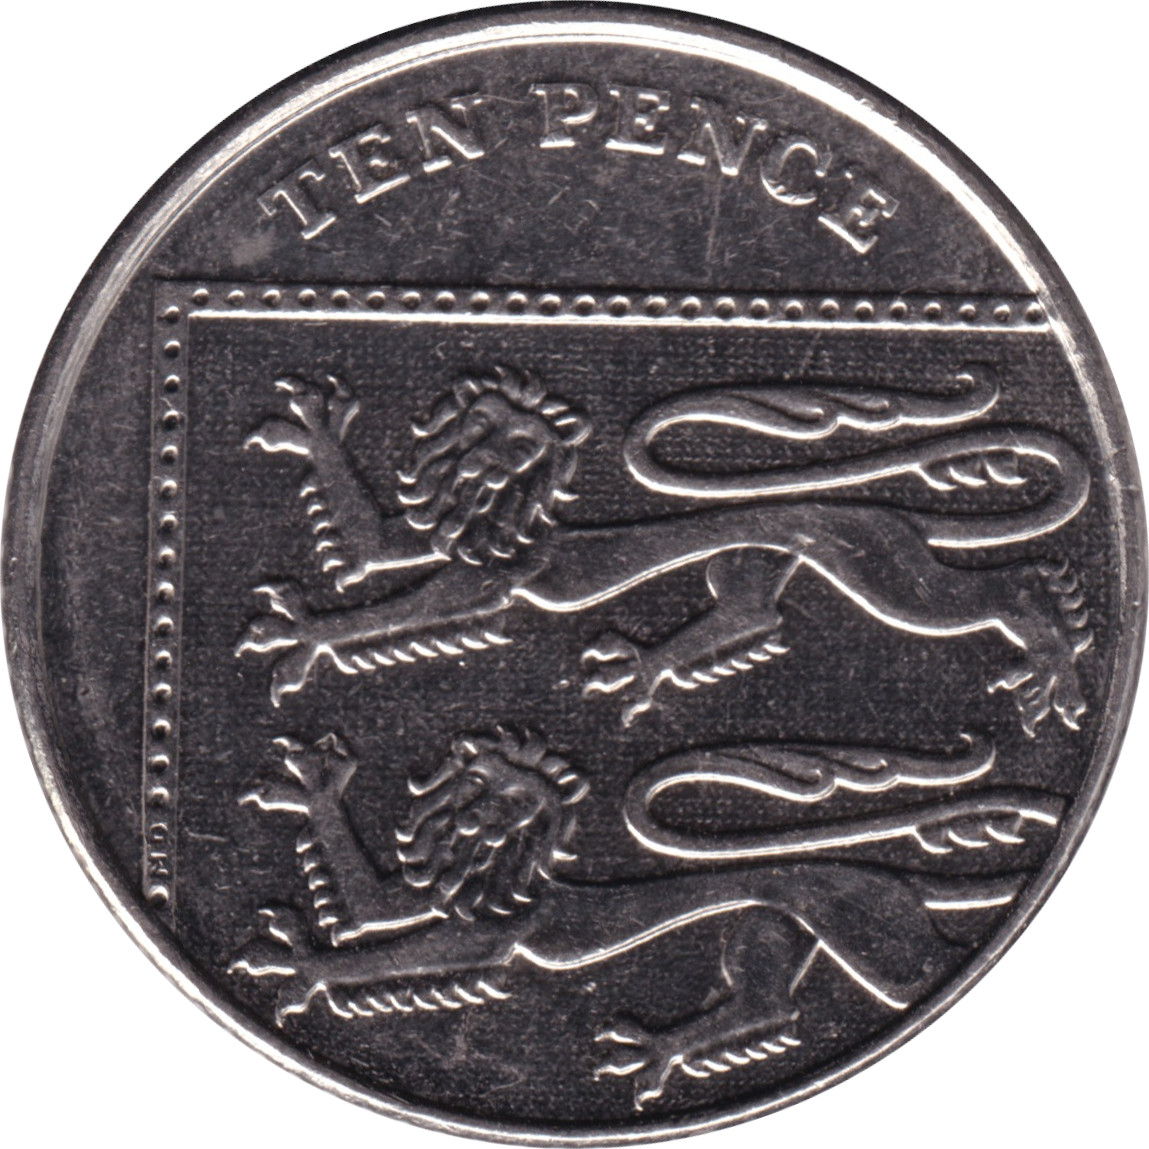 10 pence - Elizabeth II - Tête agée - Blason